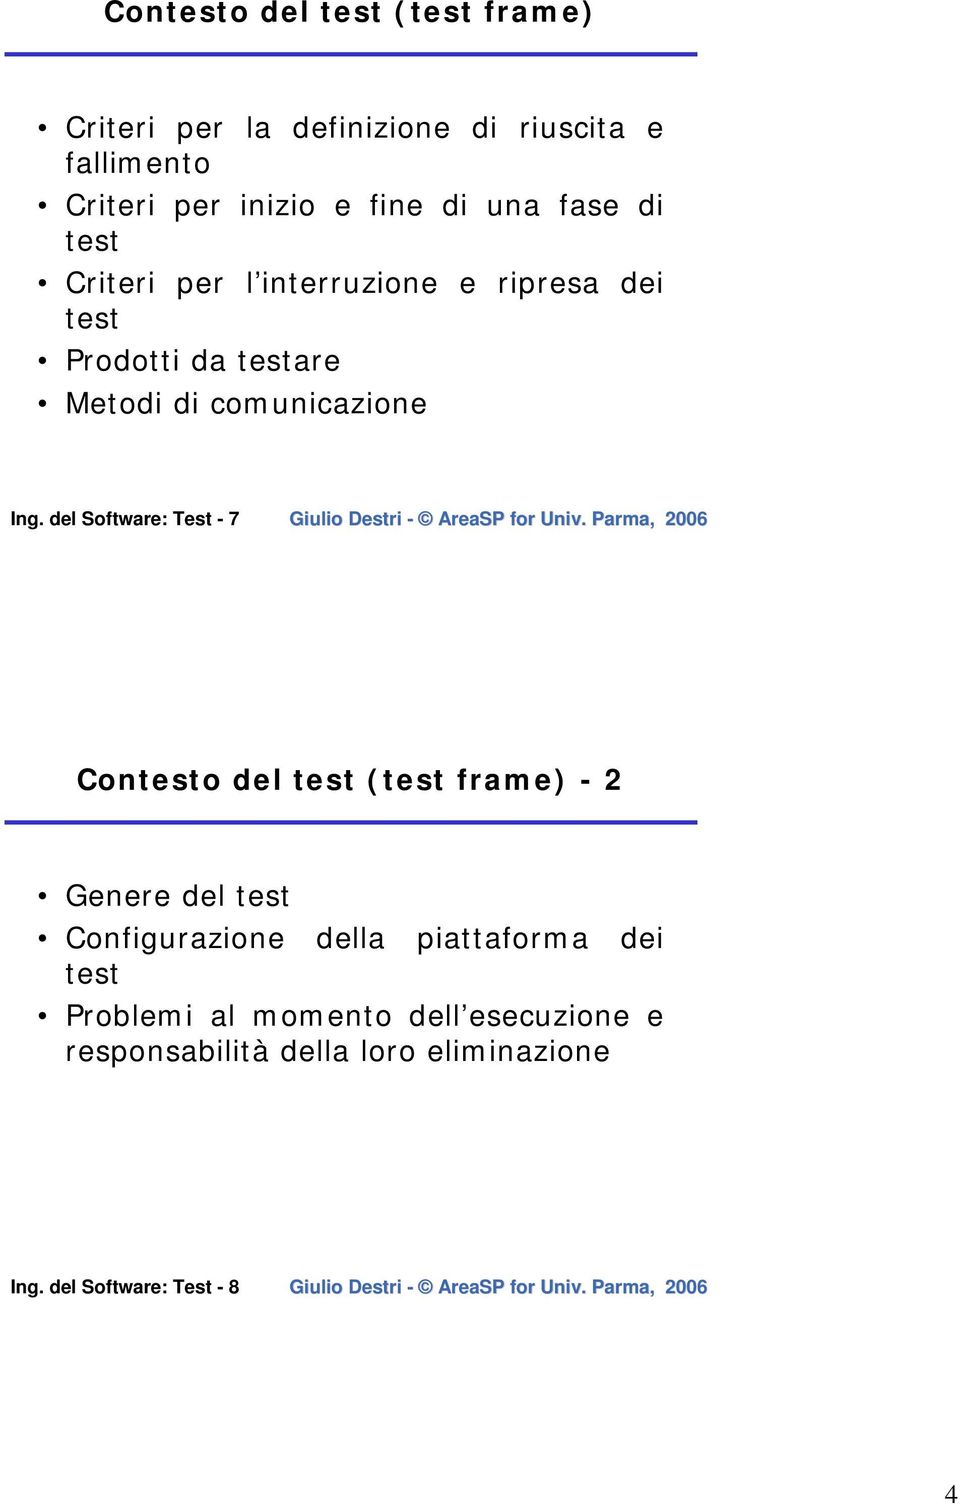 del Software: Test - 7 Contesto del test (test frame) - 2 Genere del test Configurazione della piattaforma dei